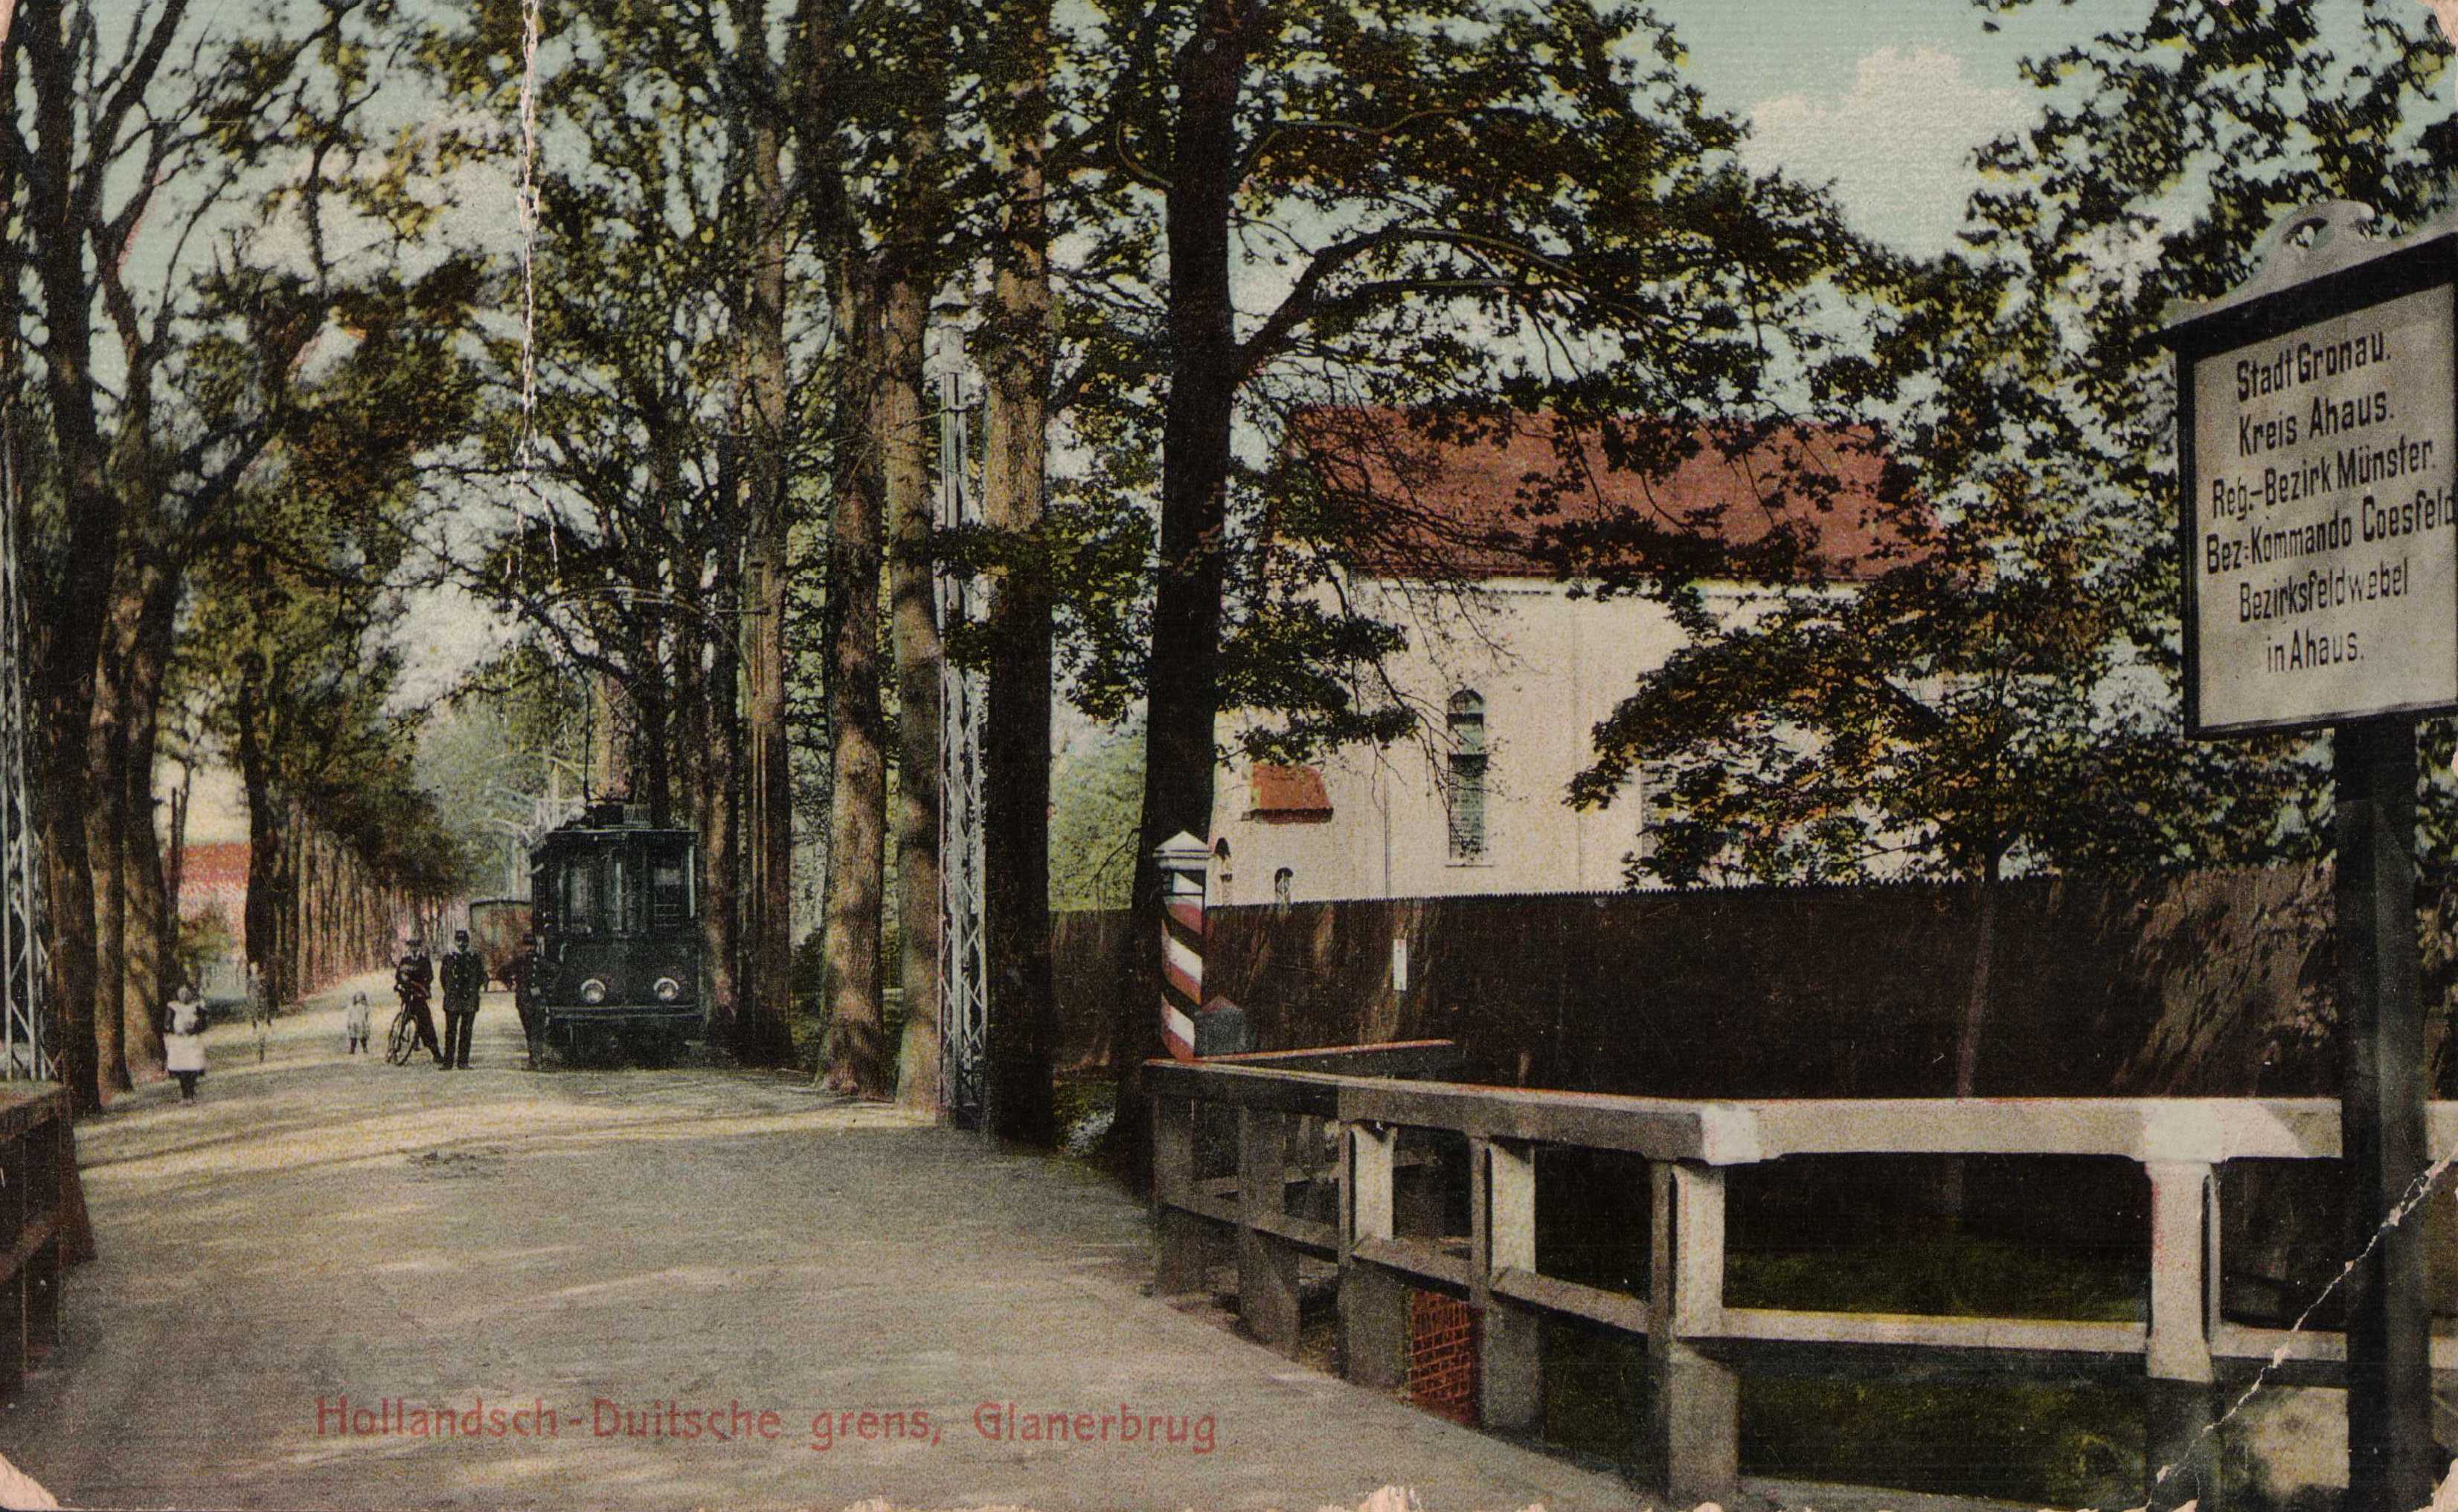 Glanerbrug-grens-tram-1911-a700e2c9.jpg